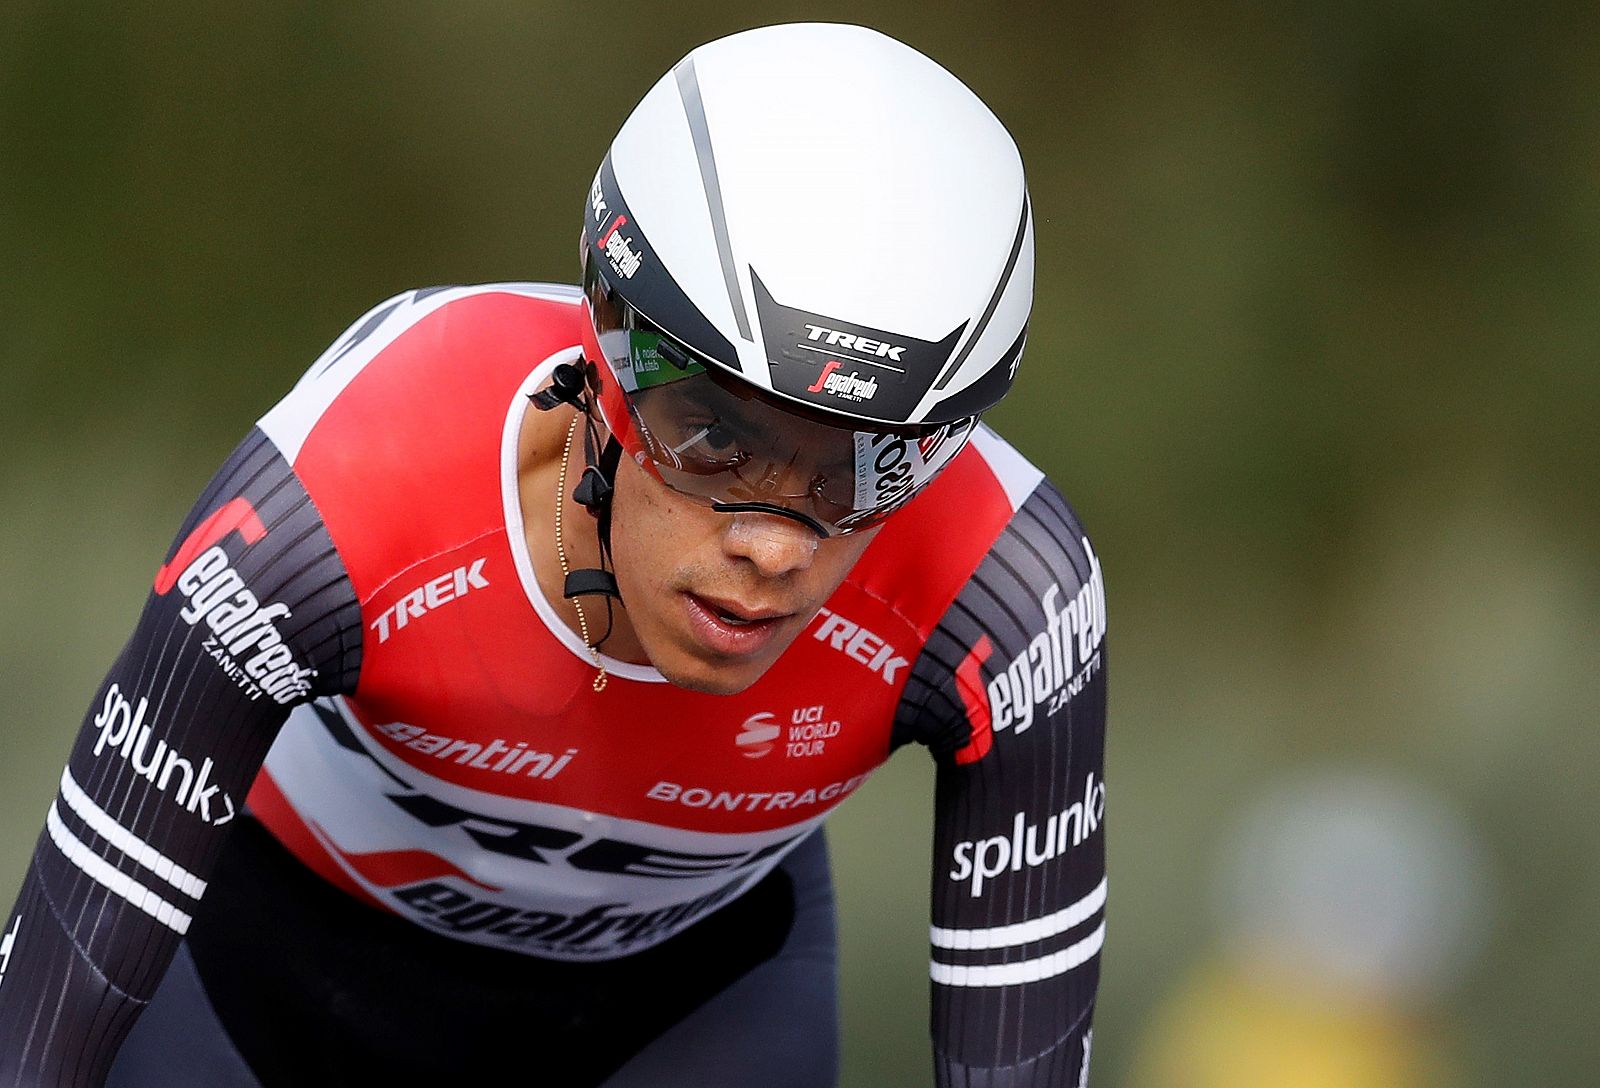 Imagen del ciclista colombiano Jarlinson Pantano, del equipo Trek Segafredo, durante la quinta etapa de la París Niza 2019.